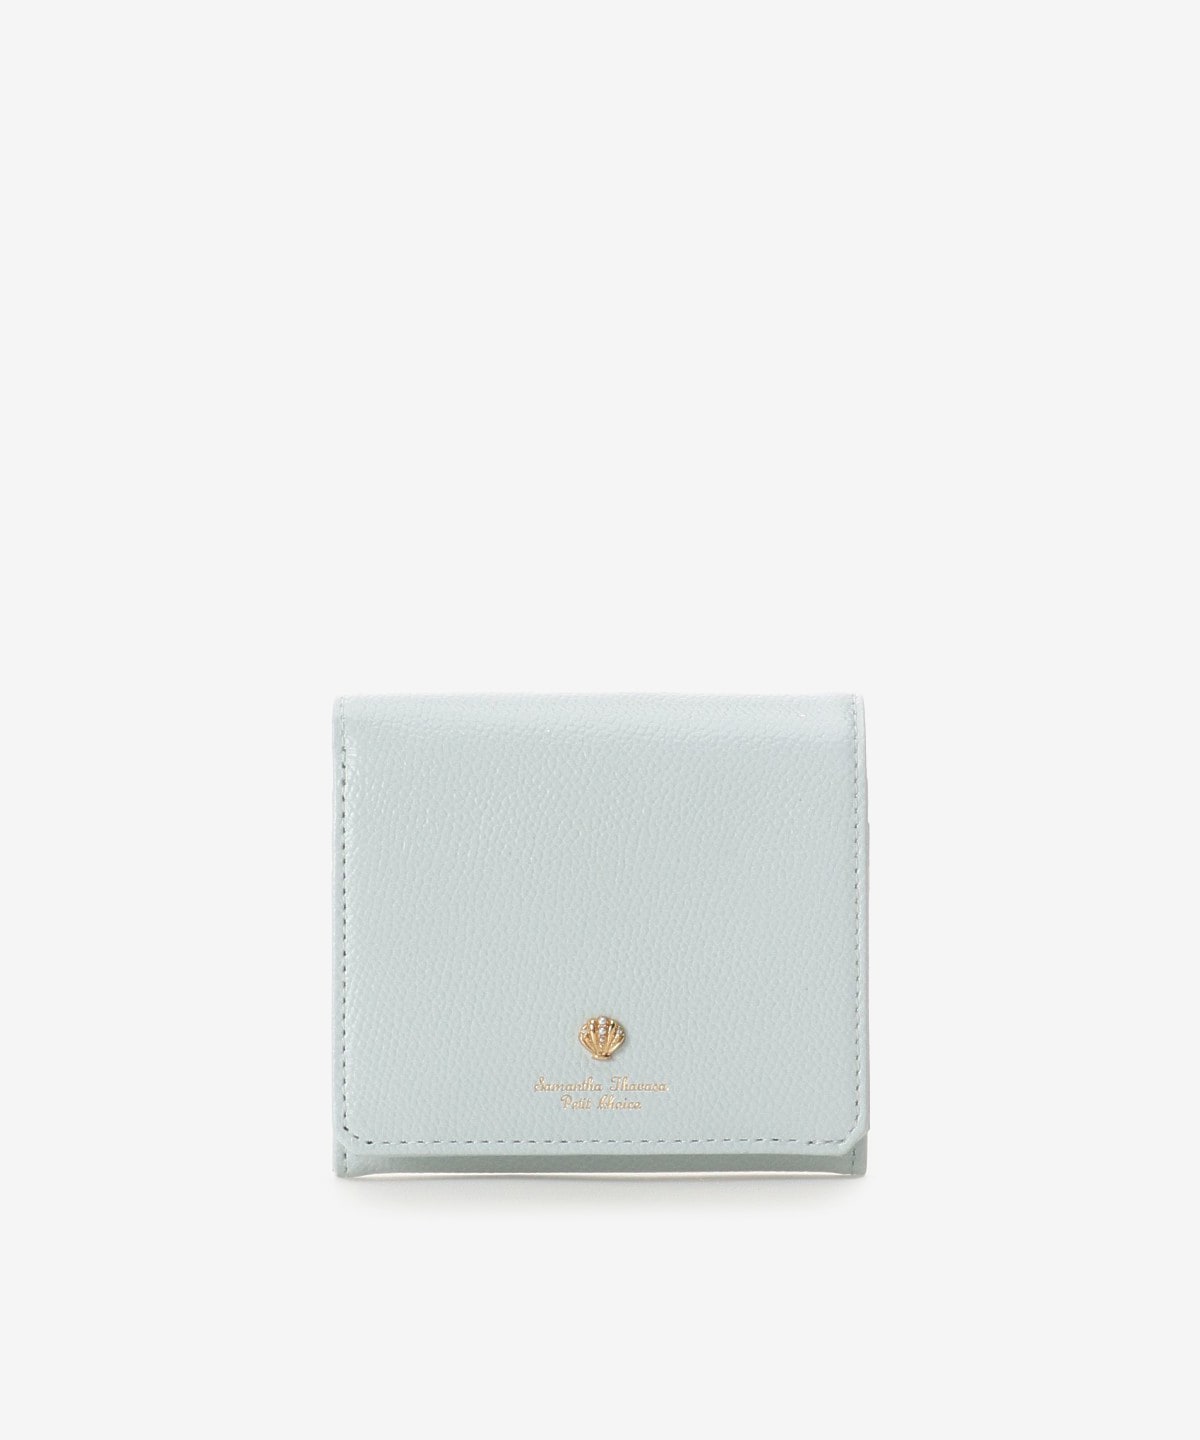 シェルモチーフBOX型折財布